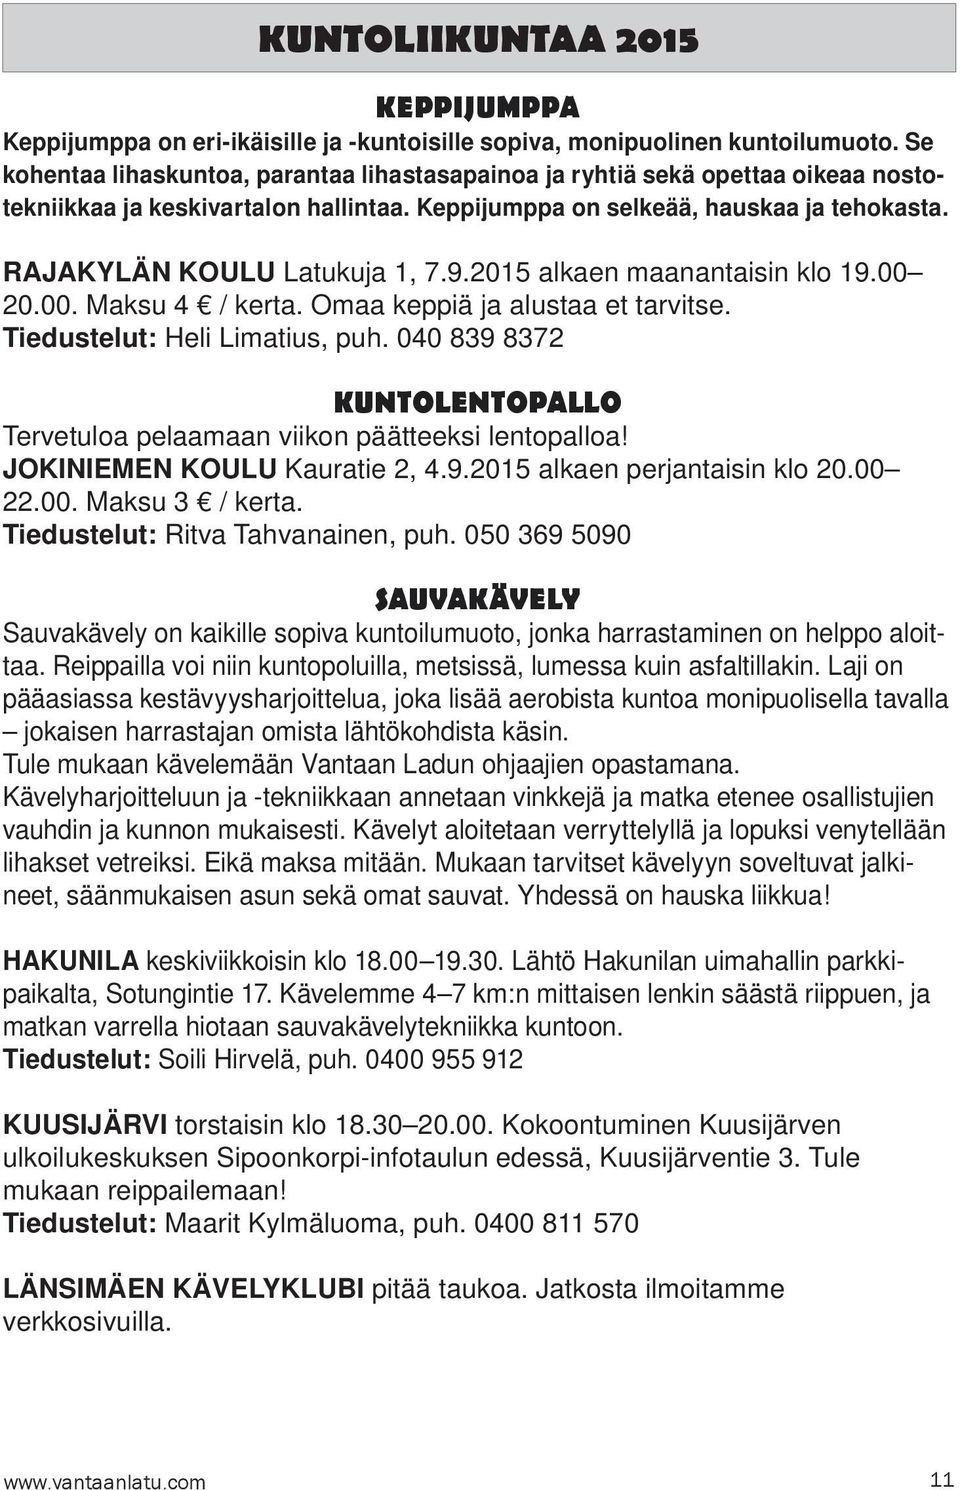 9.2015 alkaen maanantaisin klo 19.00 20.00. Maksu 4 / kerta. Omaa keppiä ja alustaa et tarvitse. Tiedustelut: Heli Limatius, puh.